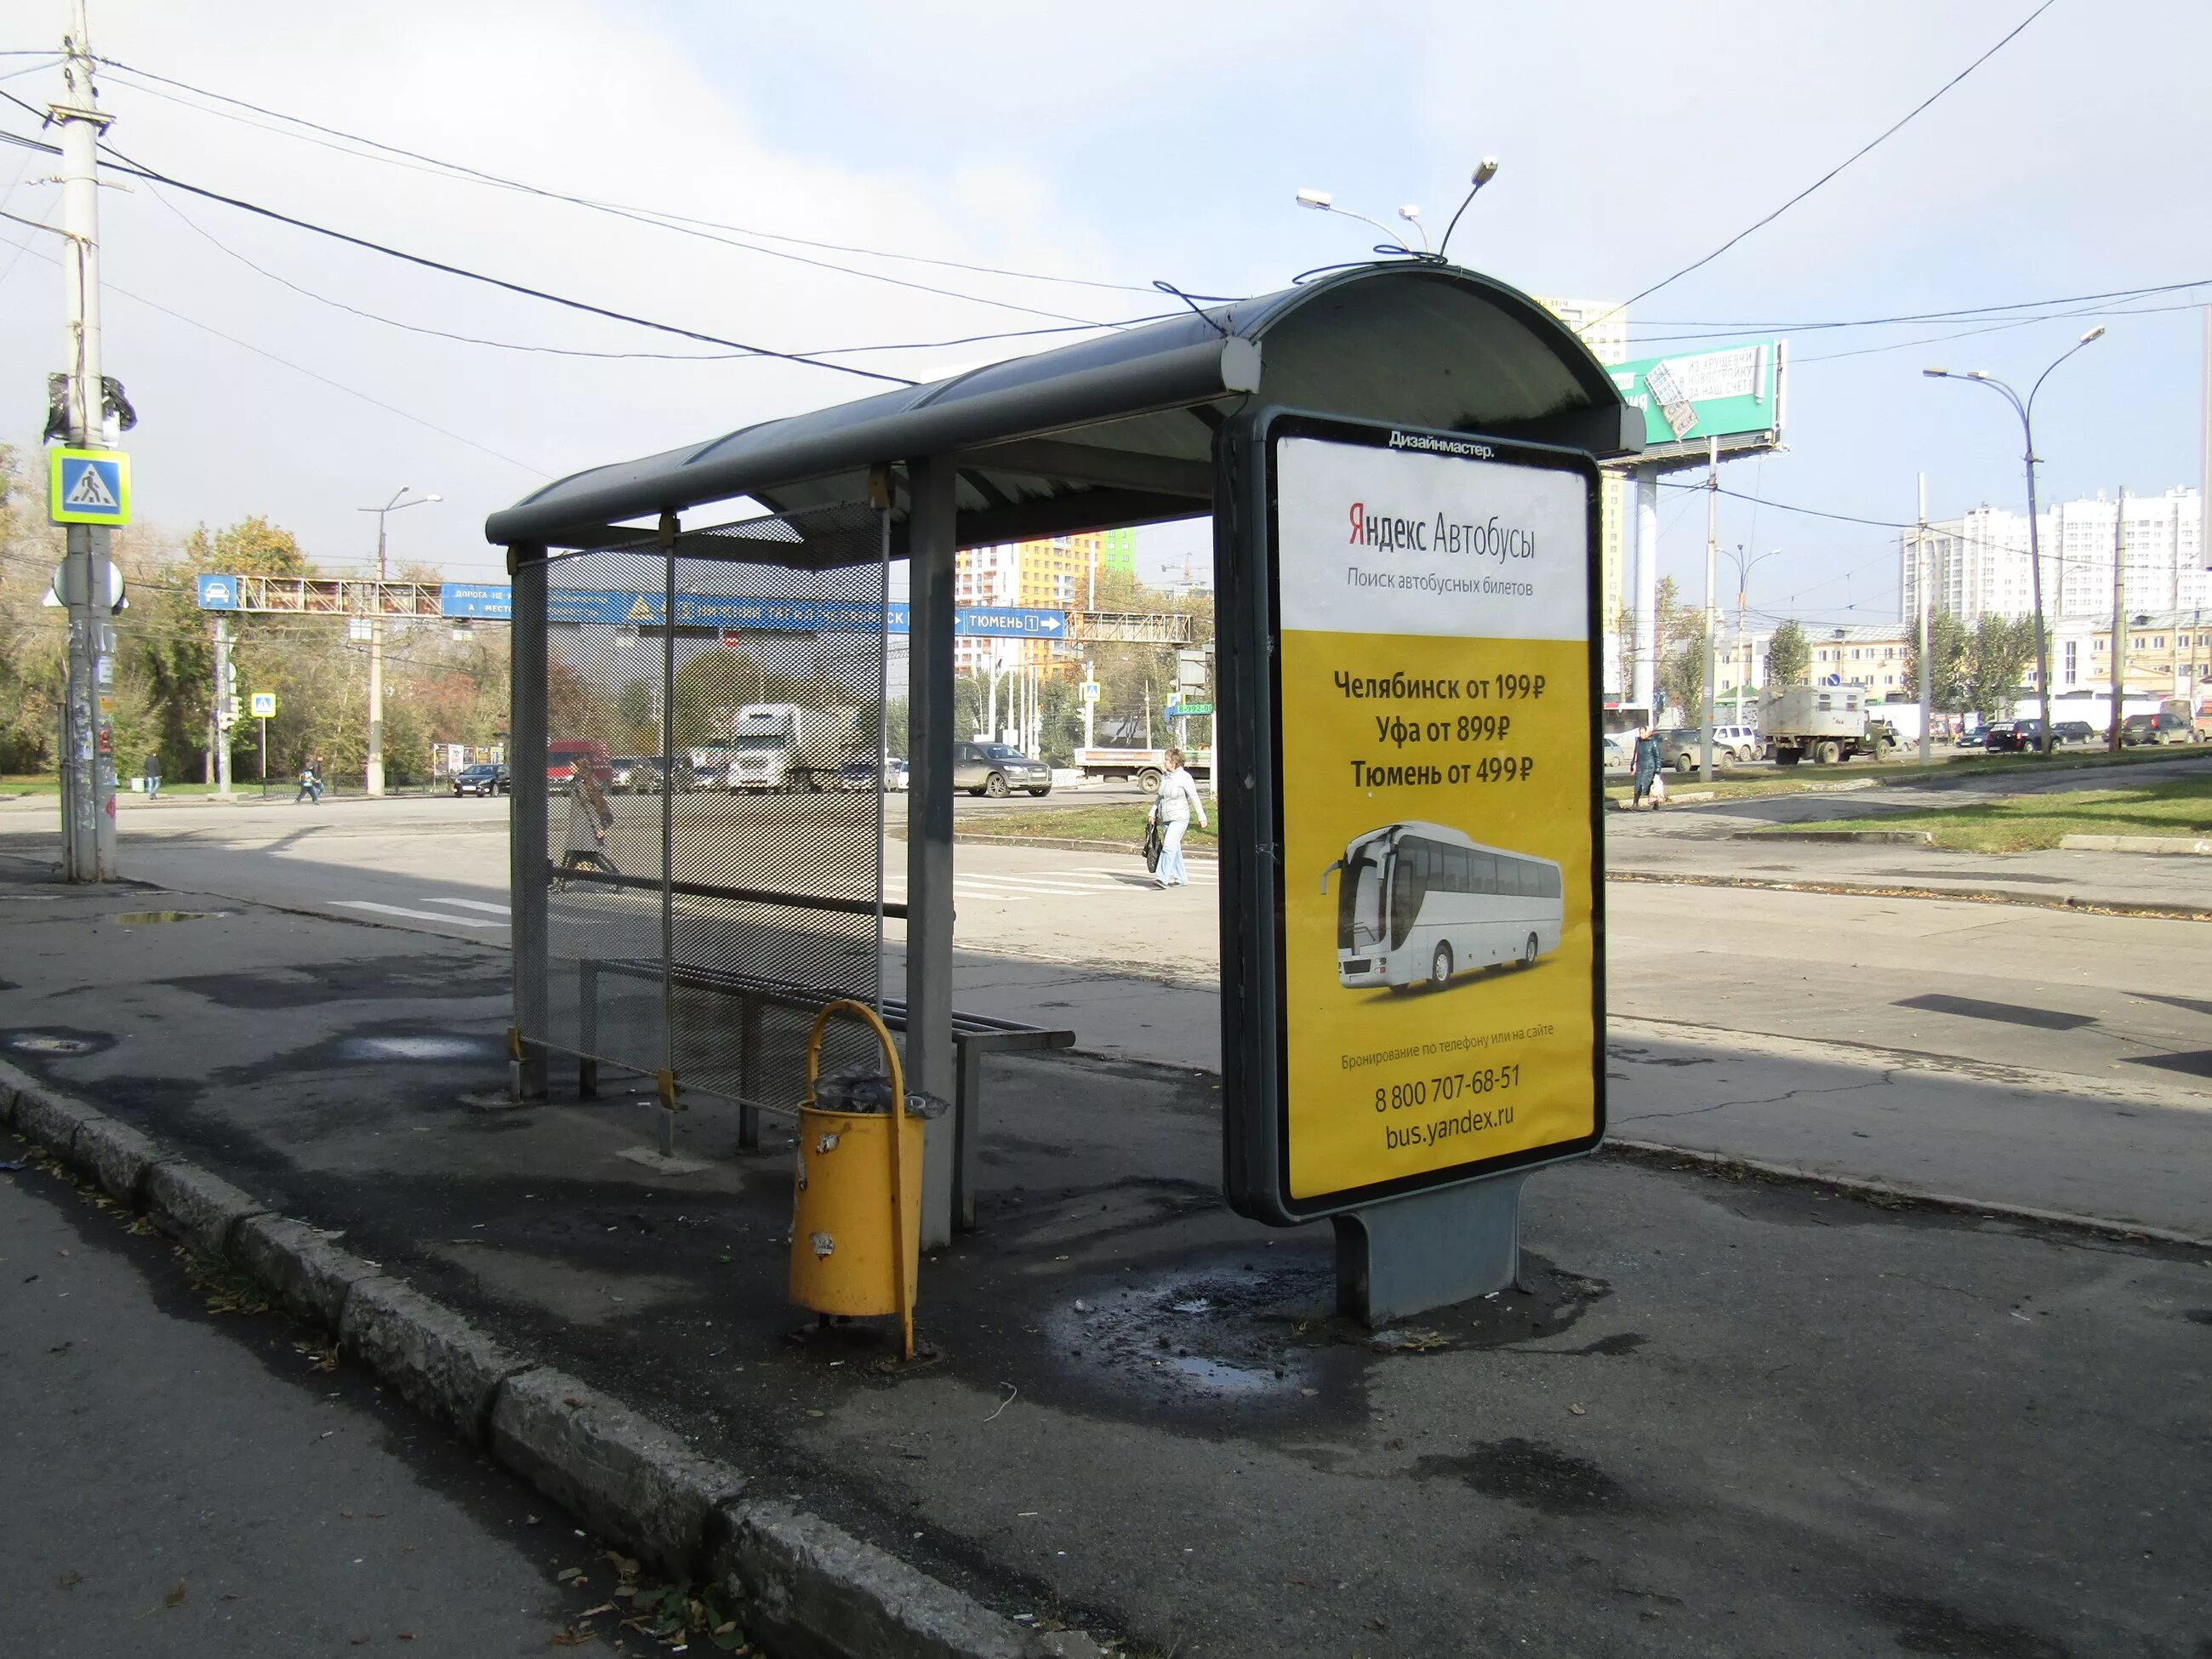 Автобусная остановка. Название остановок общественного транспорта. Название автобусной остановки. Остановки общественного транспорта Екатеринбург.